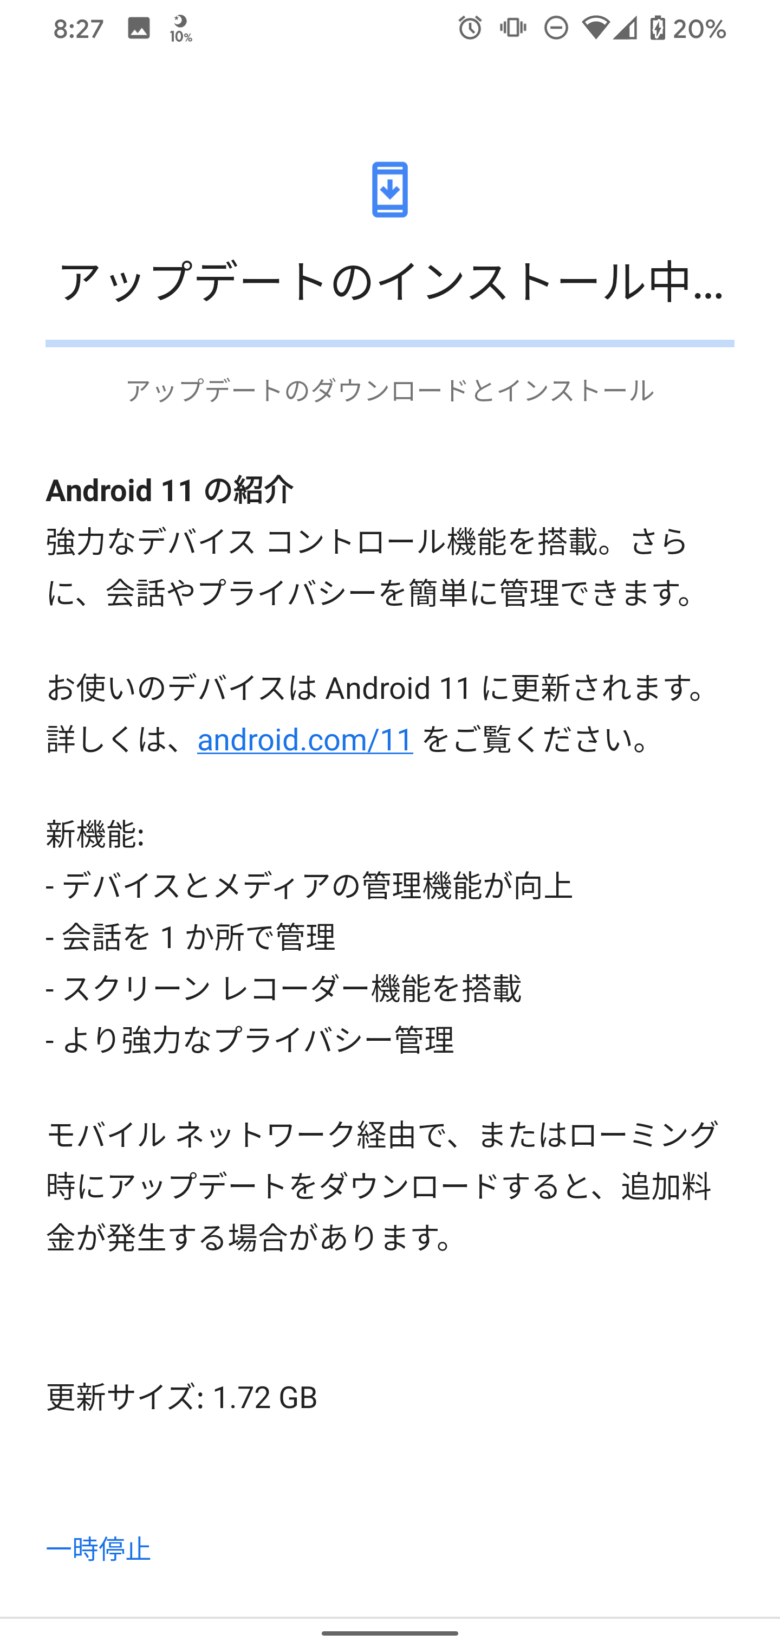 Android11へのシステムアップデート。インストール中の画面。